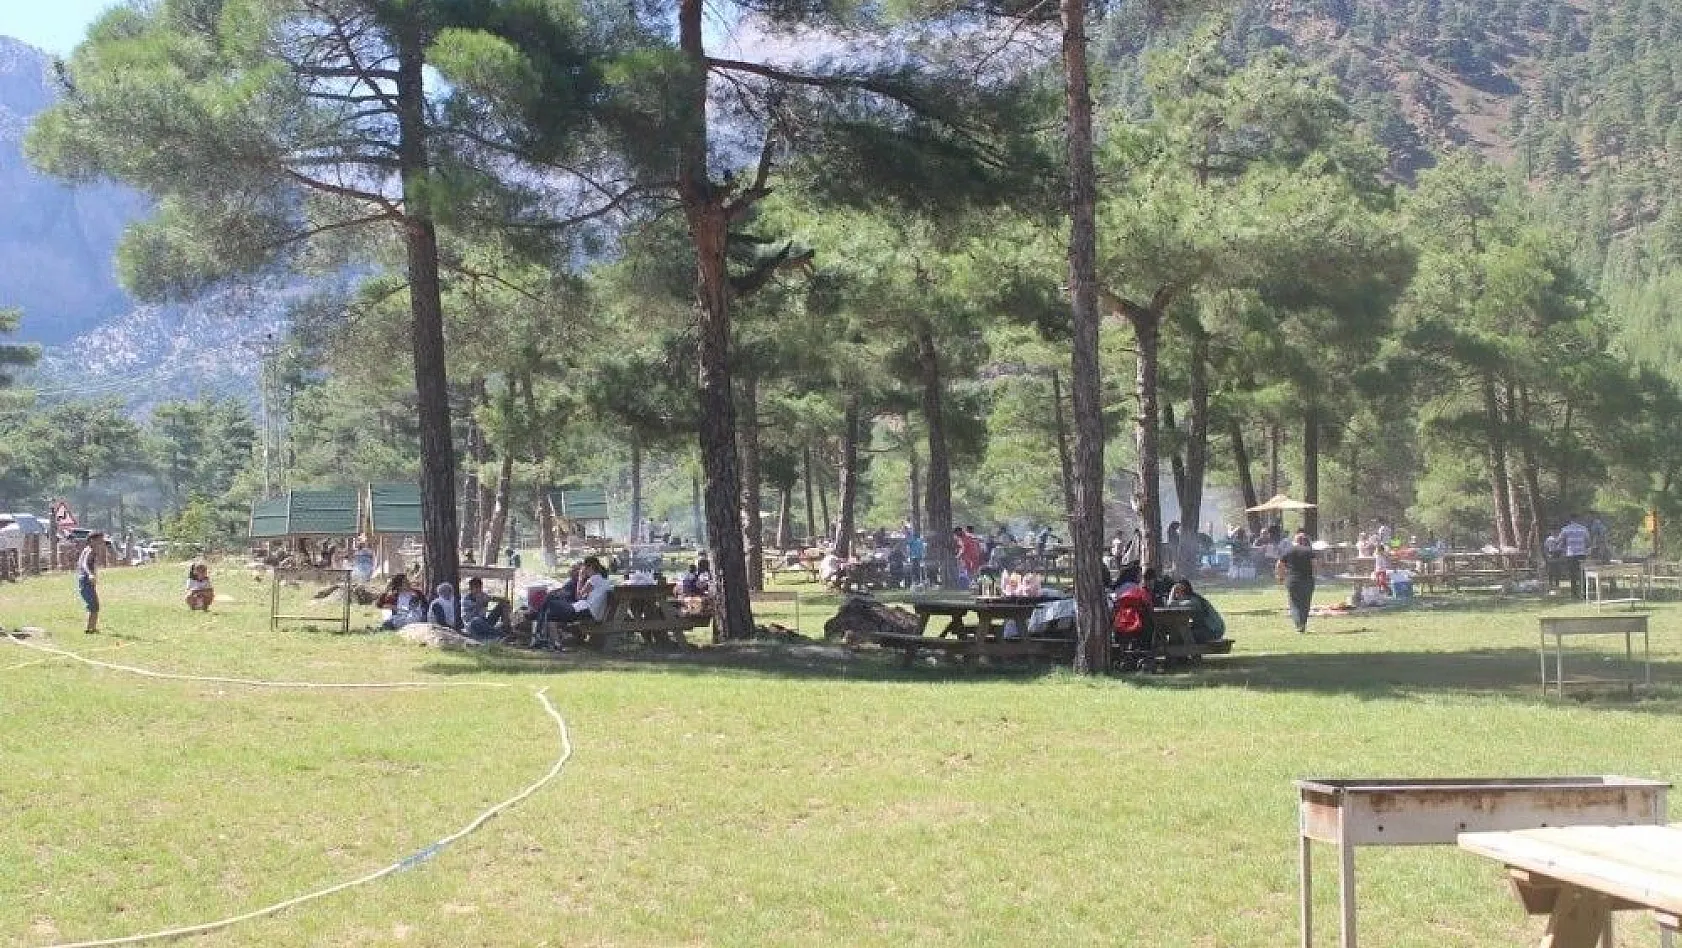 Yahyalı Milli Parklar ve Doğa Koruma Kapuzbaşı Piknik Alanı'na büyük ilgi
